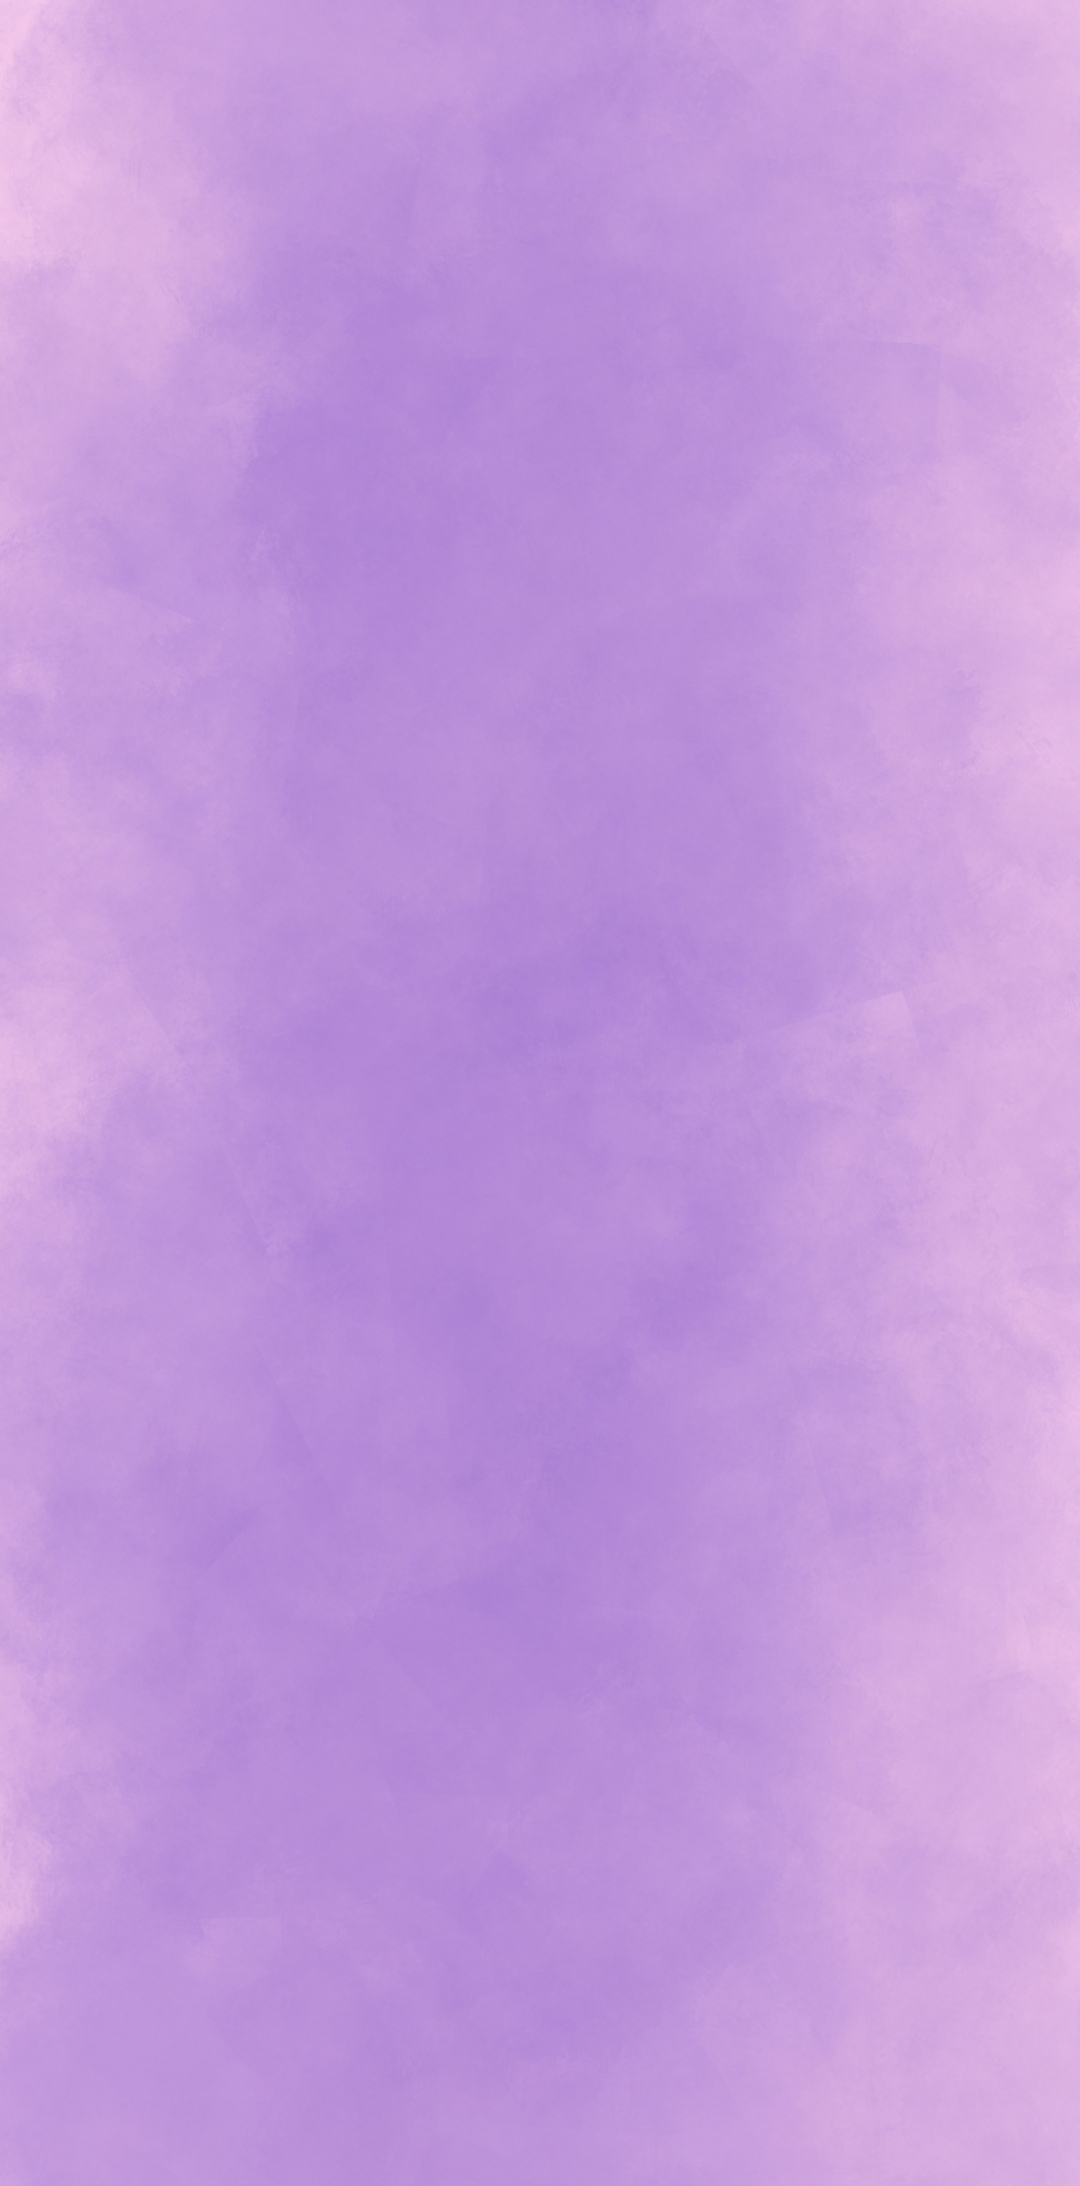 亮紫色纯色背景图片图片